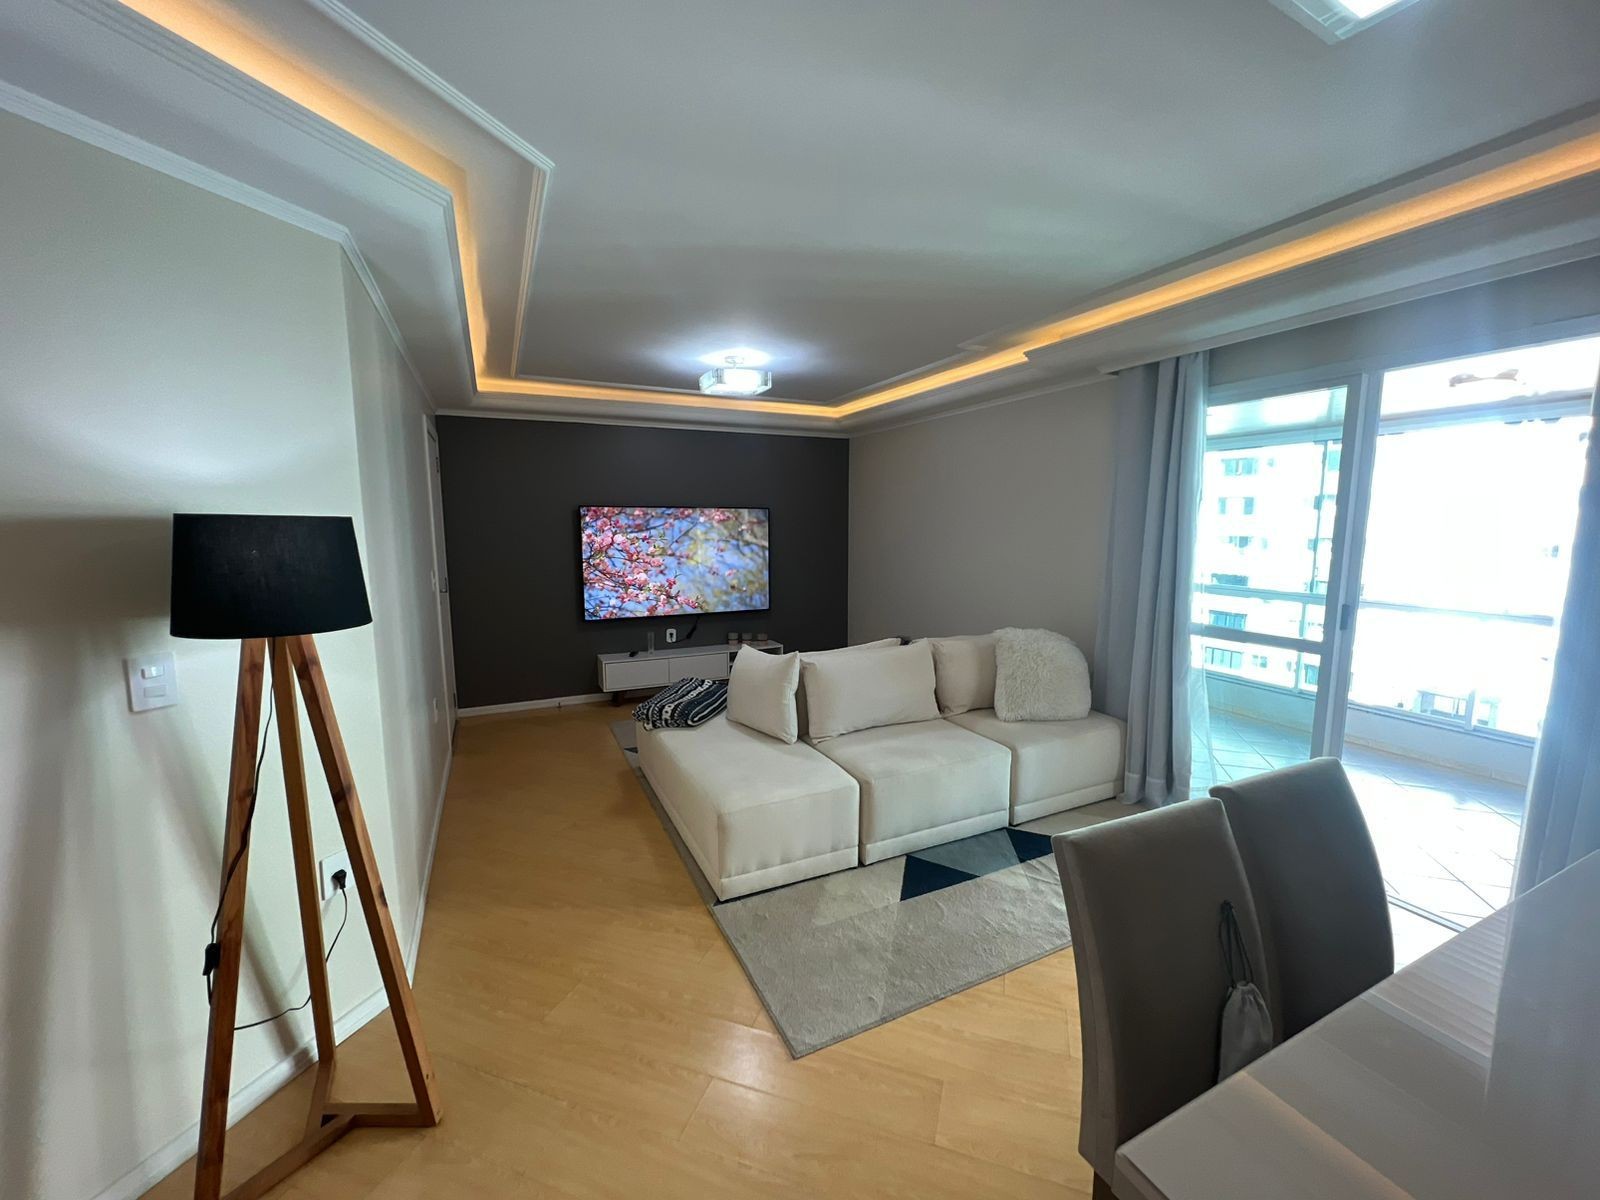 Apartamento à venda Mobiliado e Equipado com 3 Dormitórios Localizado Próximo a Av. Brasil em Balneário Camboriú - SC